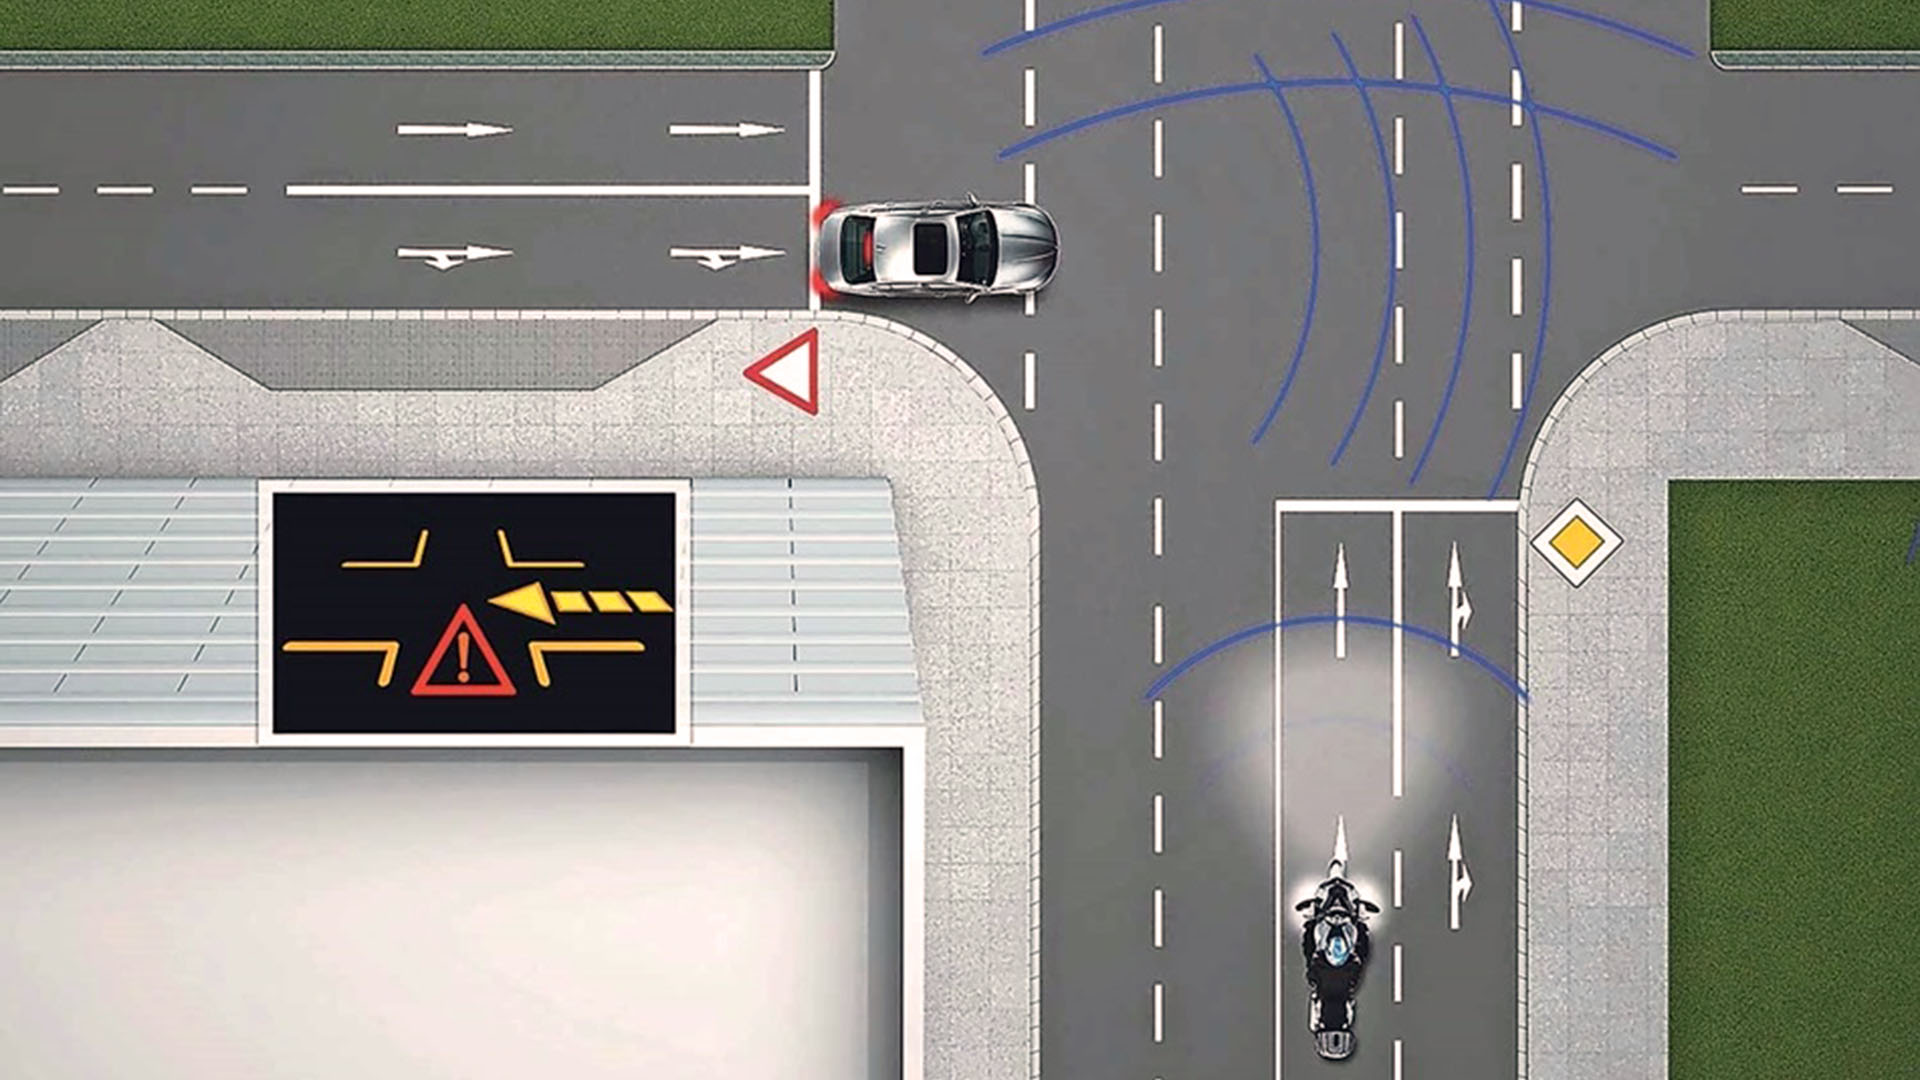 El sistema de Piaggio amplifica la señal que llega a una moto desde el radar de un auto, para hacer más visibles a estas